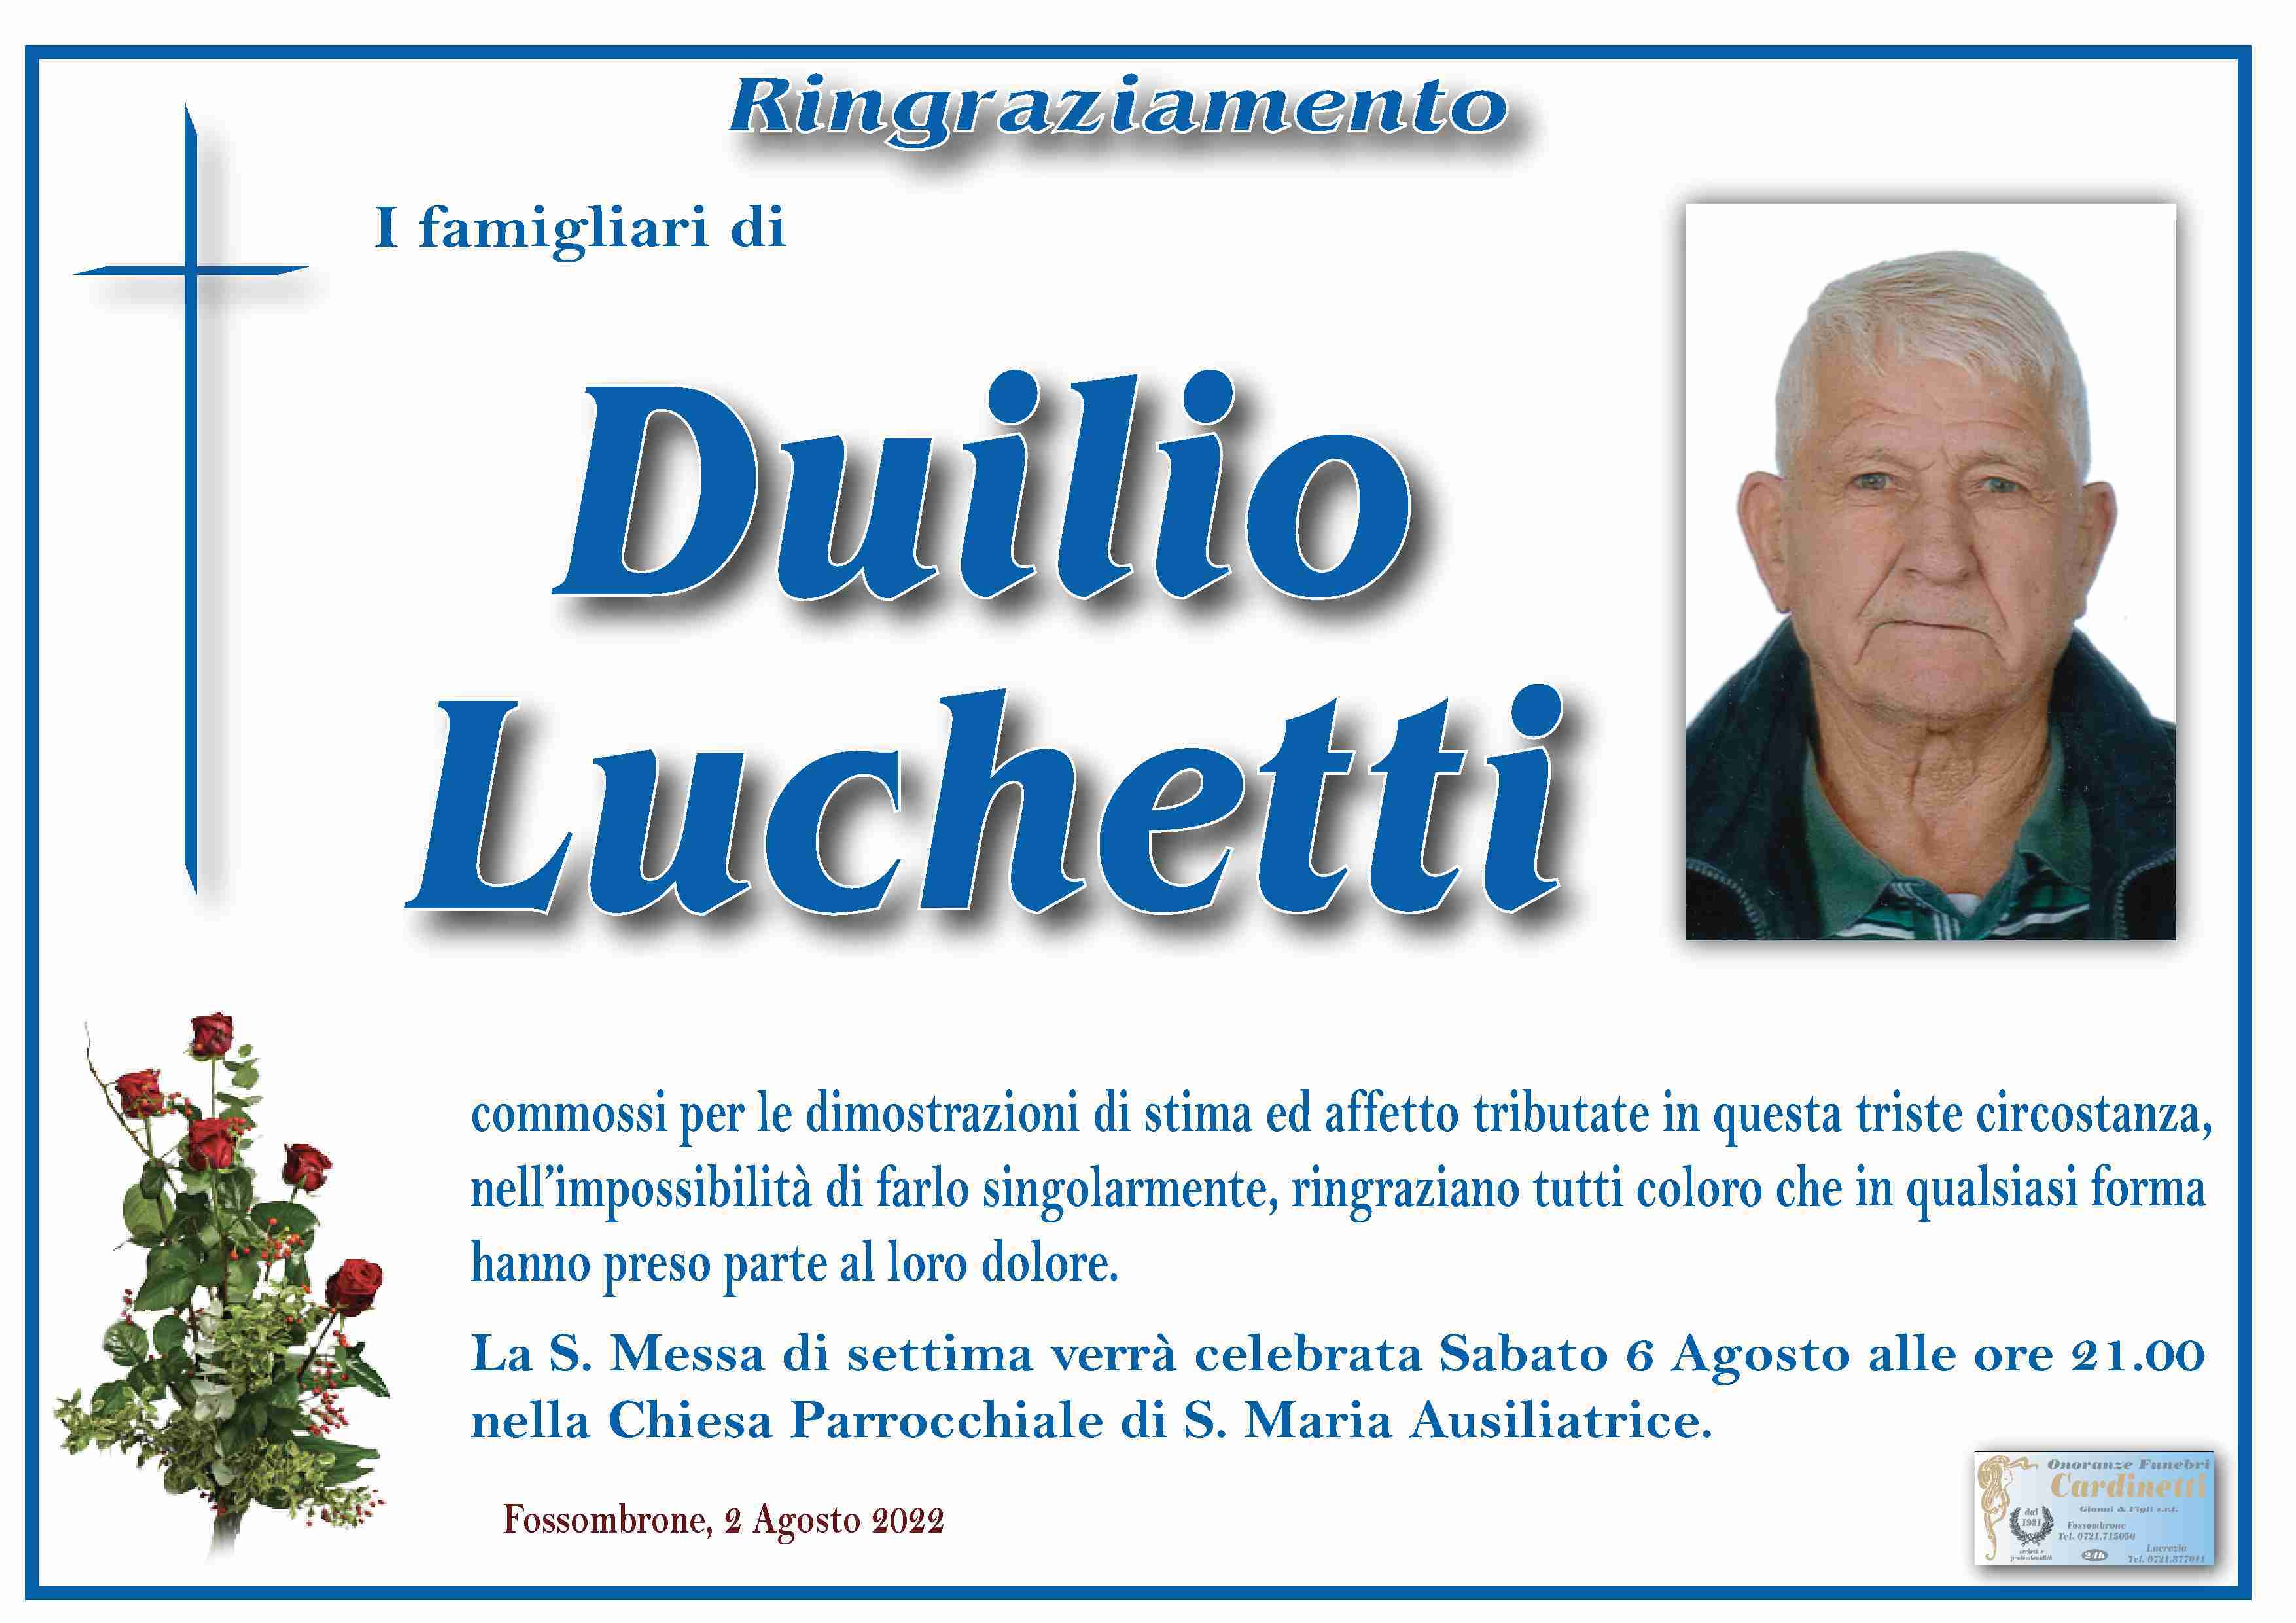 Duilio Luchetti